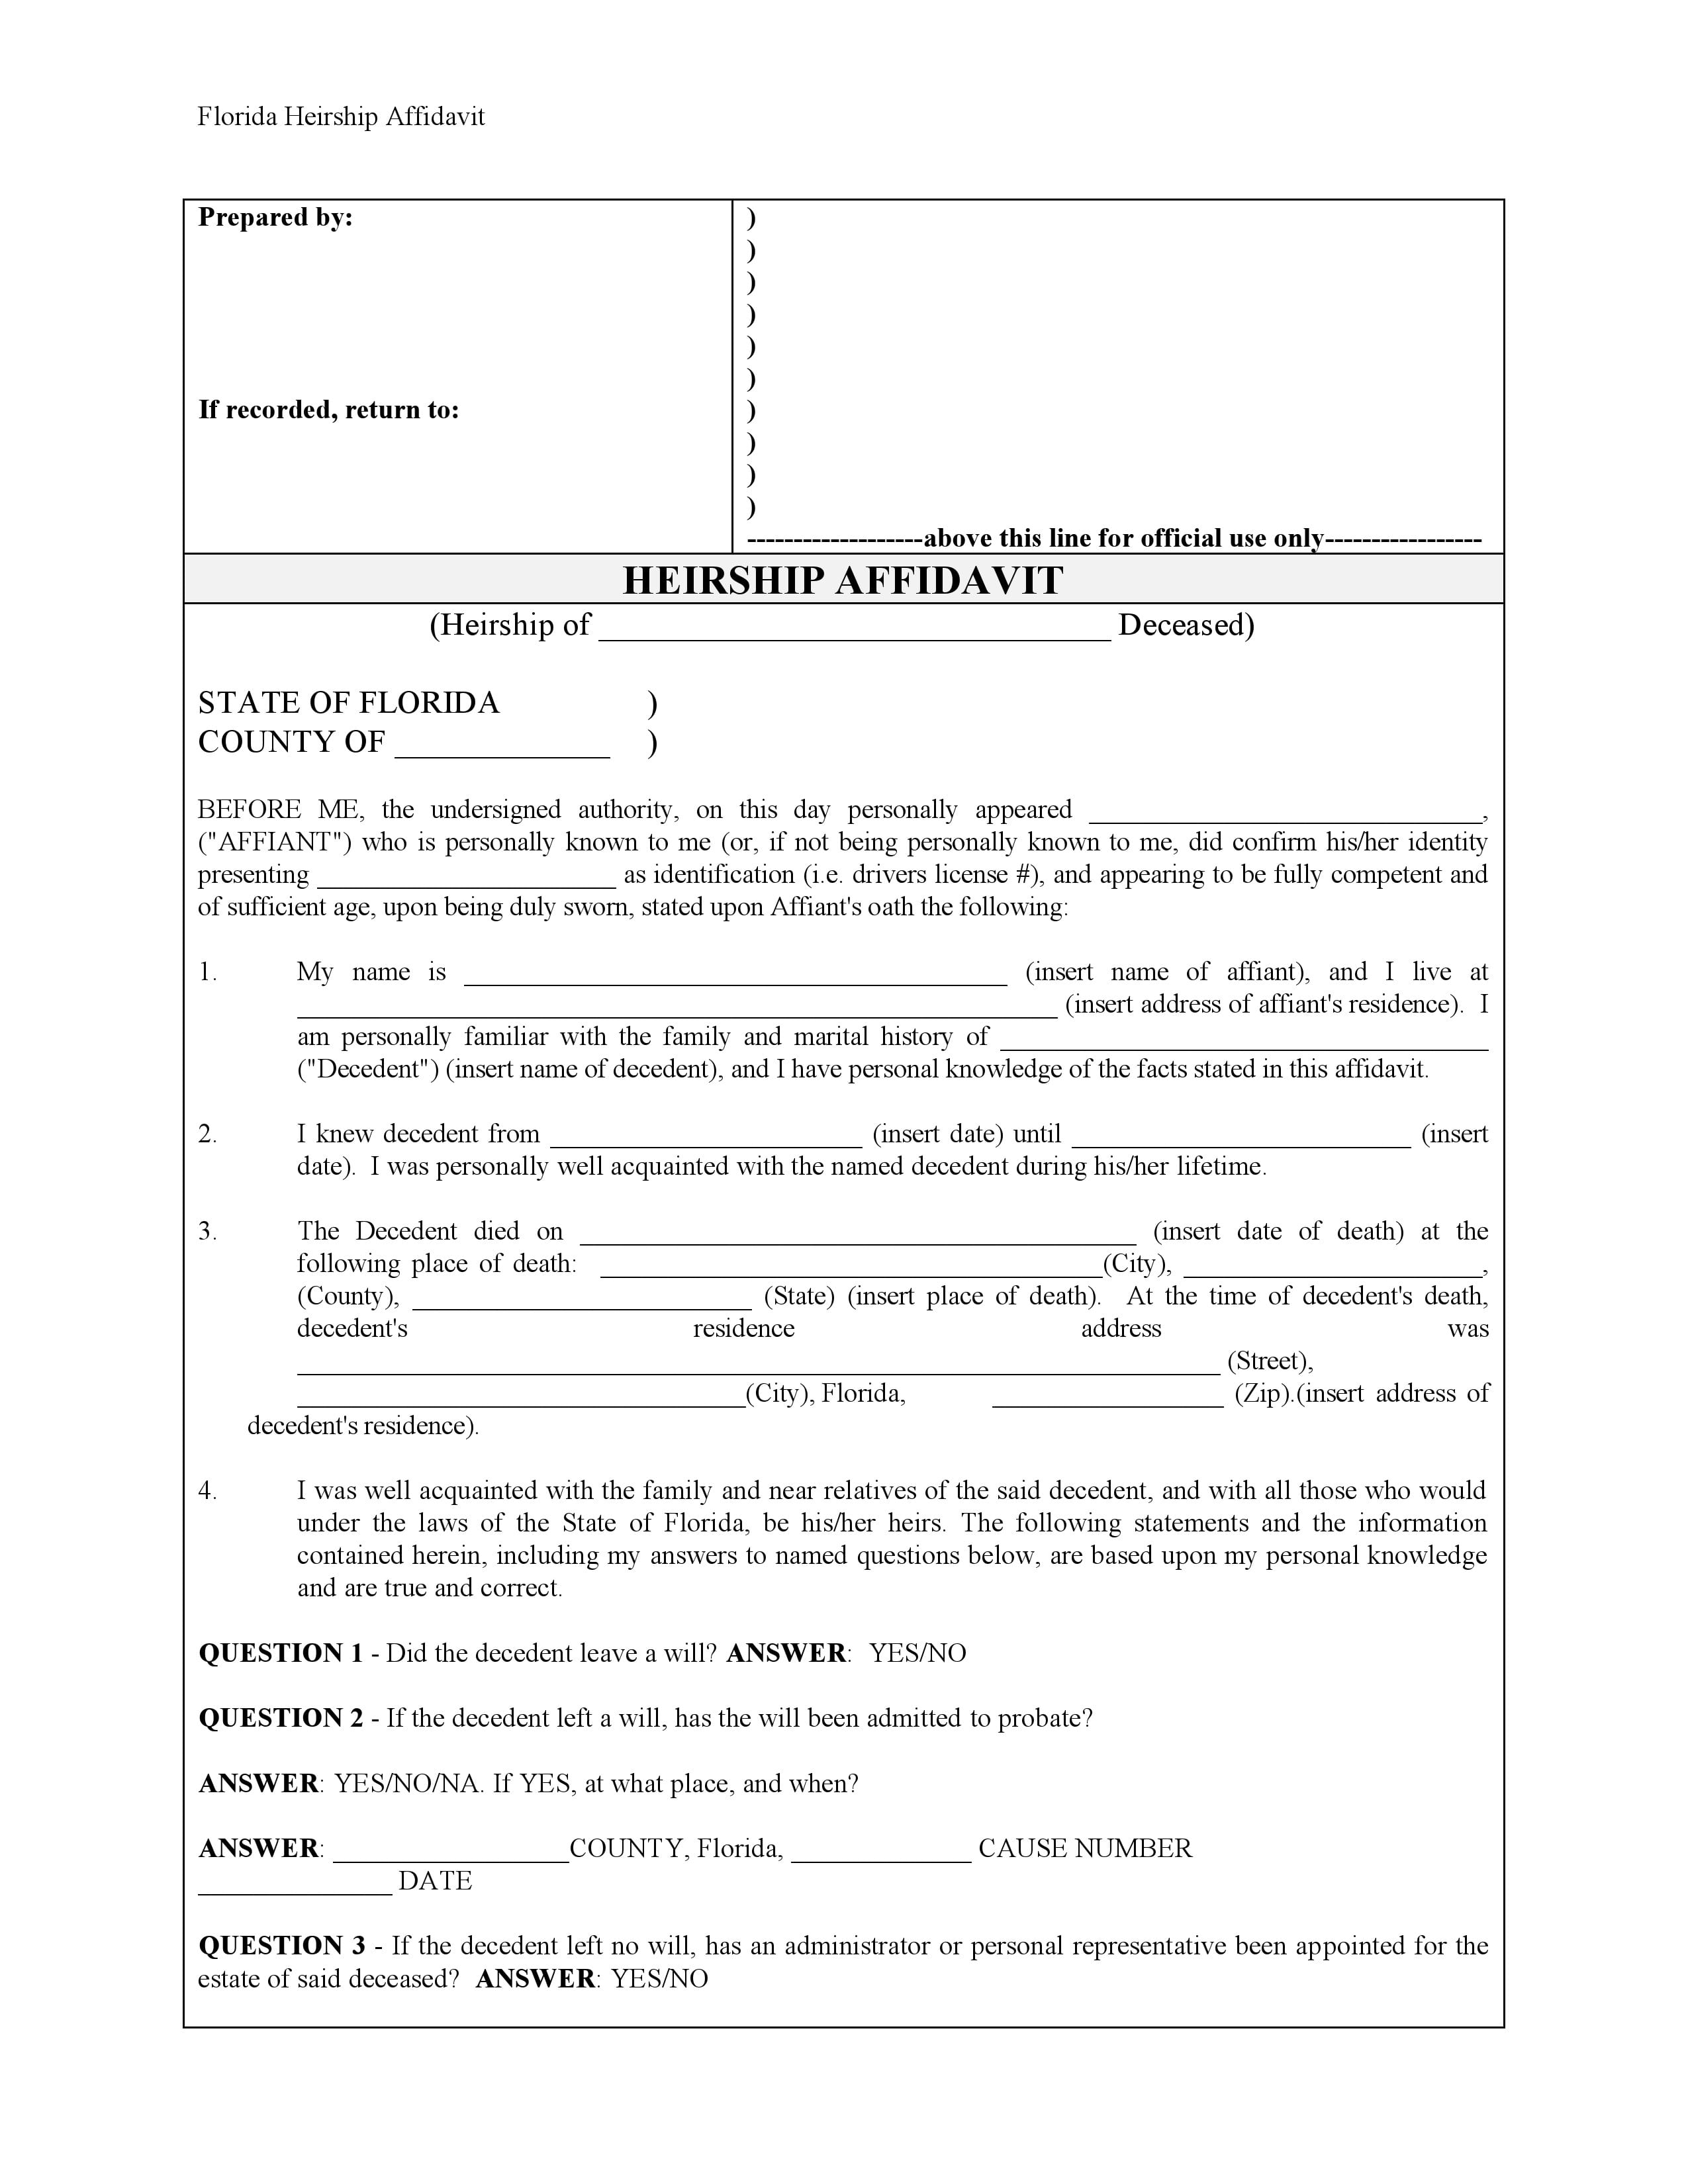 Download Free Florida Affidavit Of Heirship Form Form Download